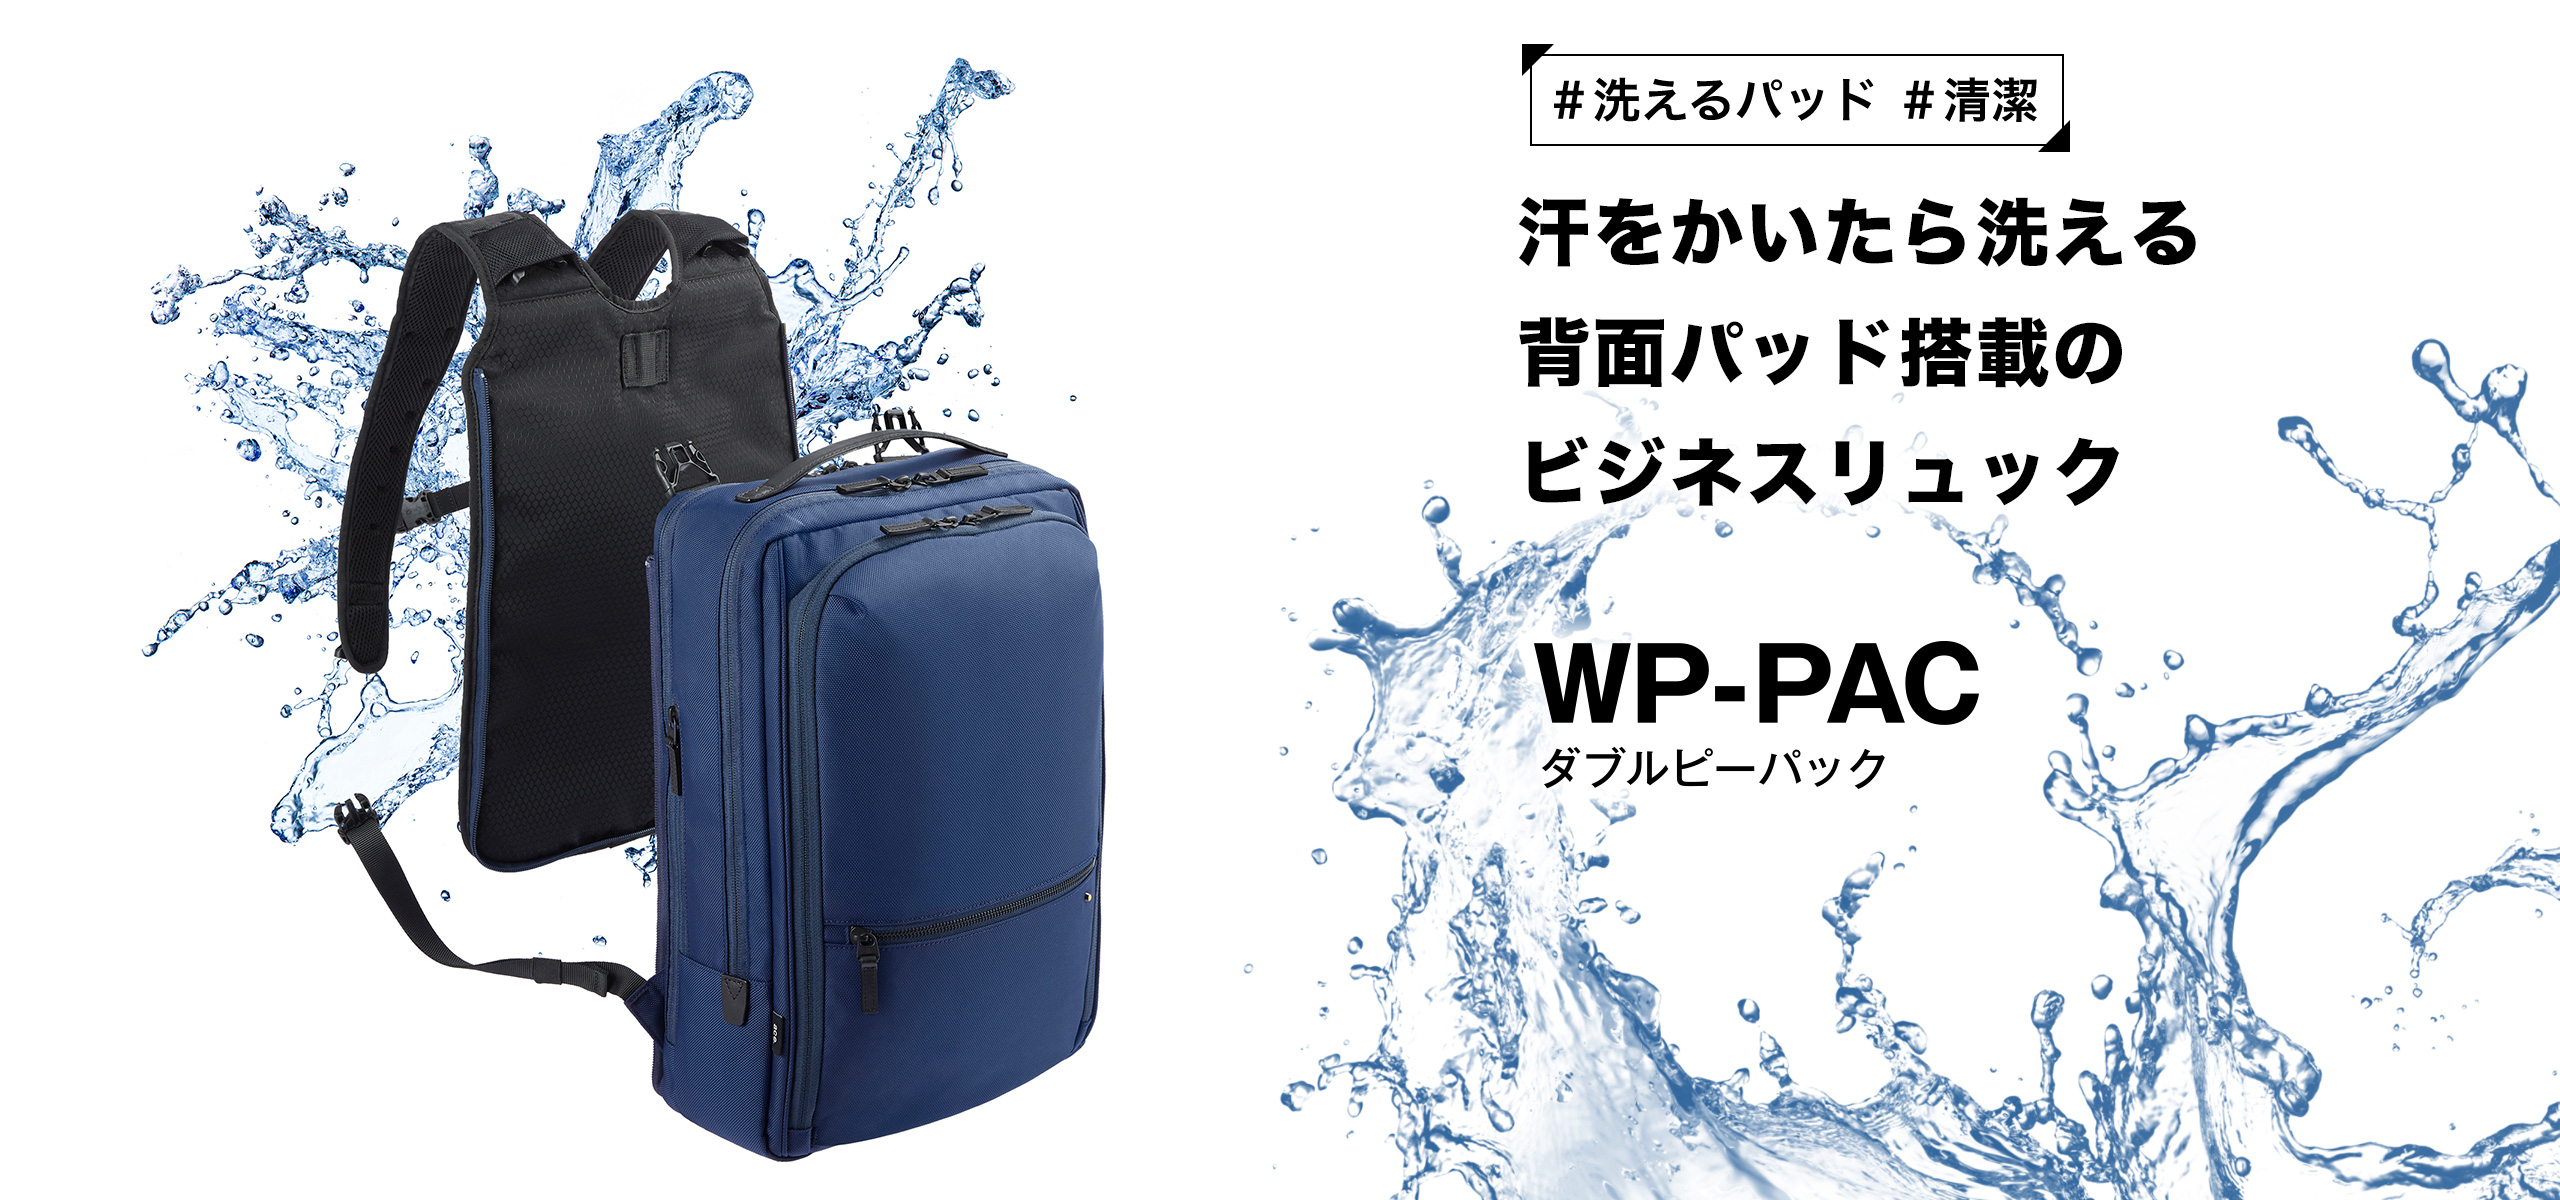 汗をかいたら洗える背面パッド搭載のビジネスリュック WP-PAC